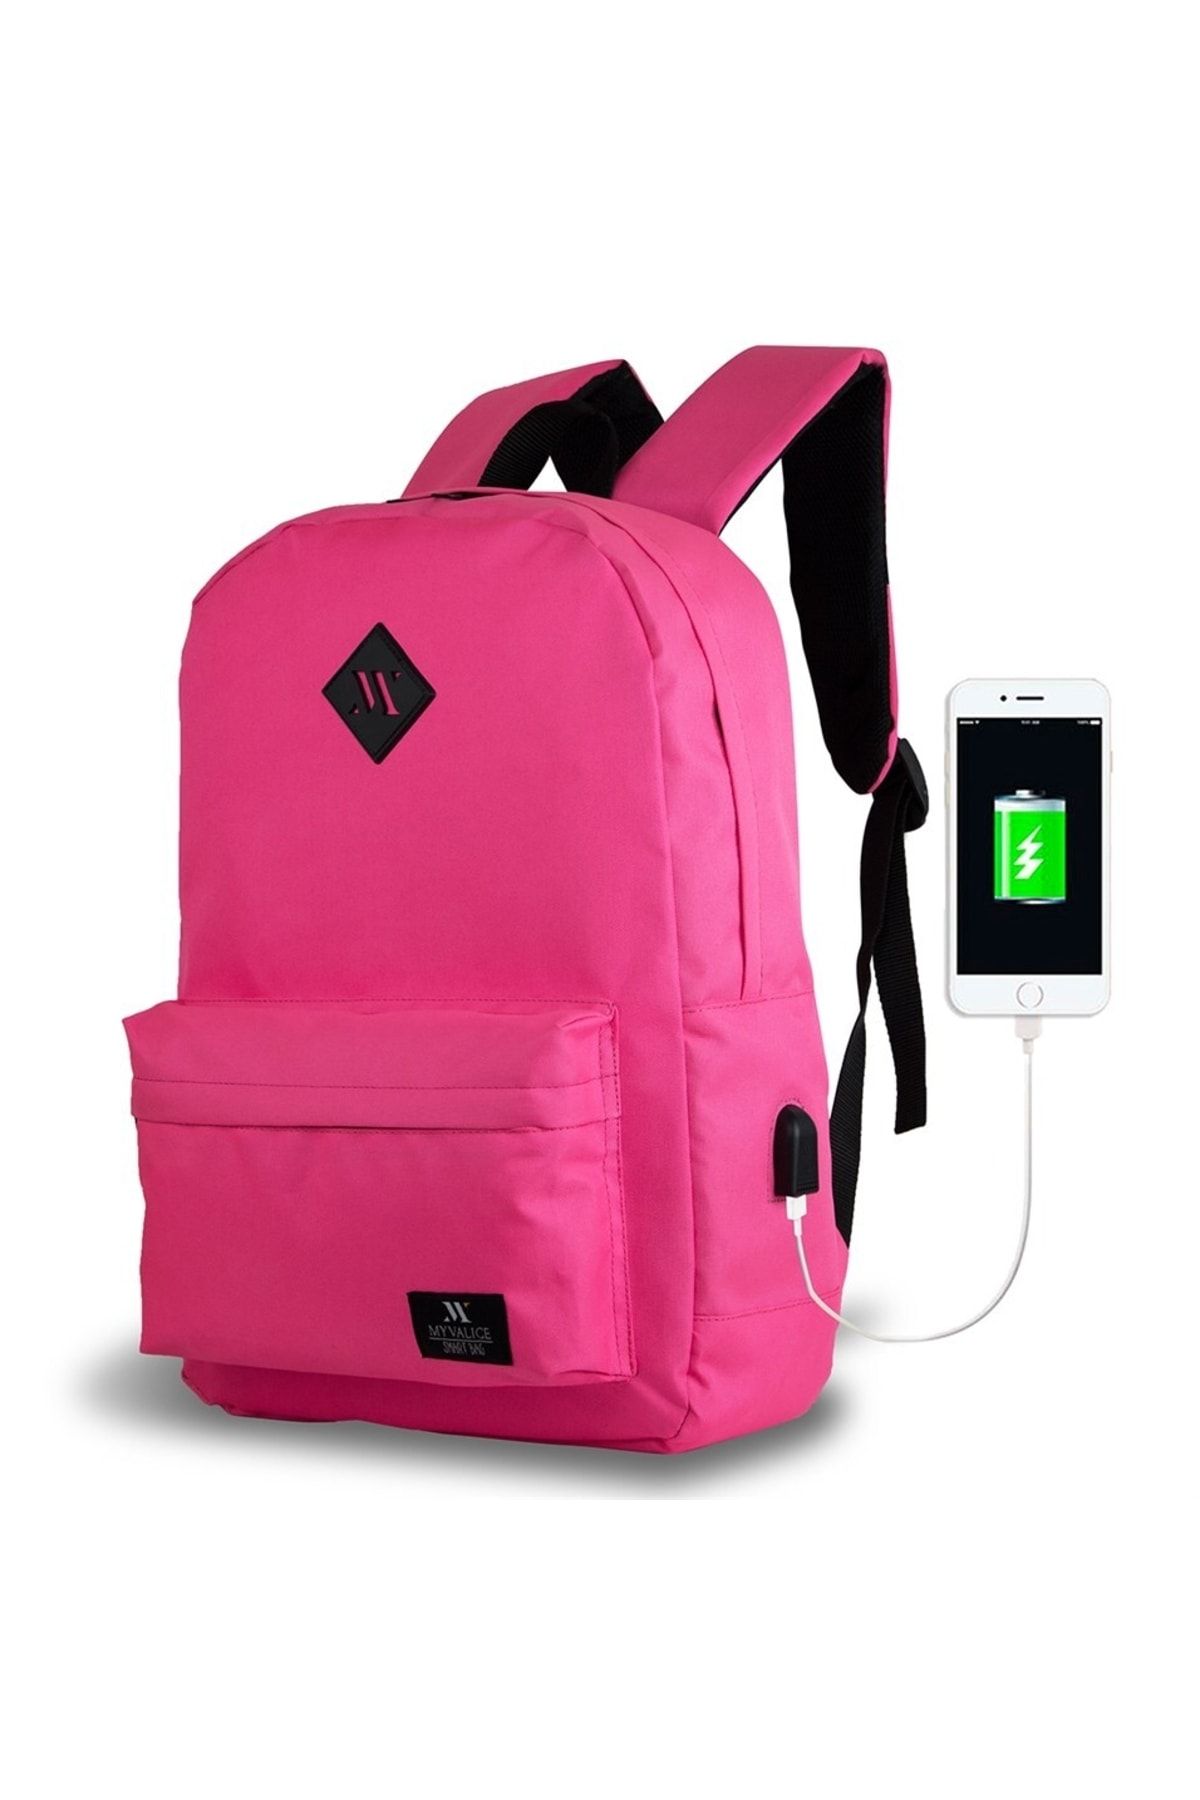 My Valice Smart Bag Specta Usb Şarj Girişli Akıllı Laptop Sırt Çantası Pembe